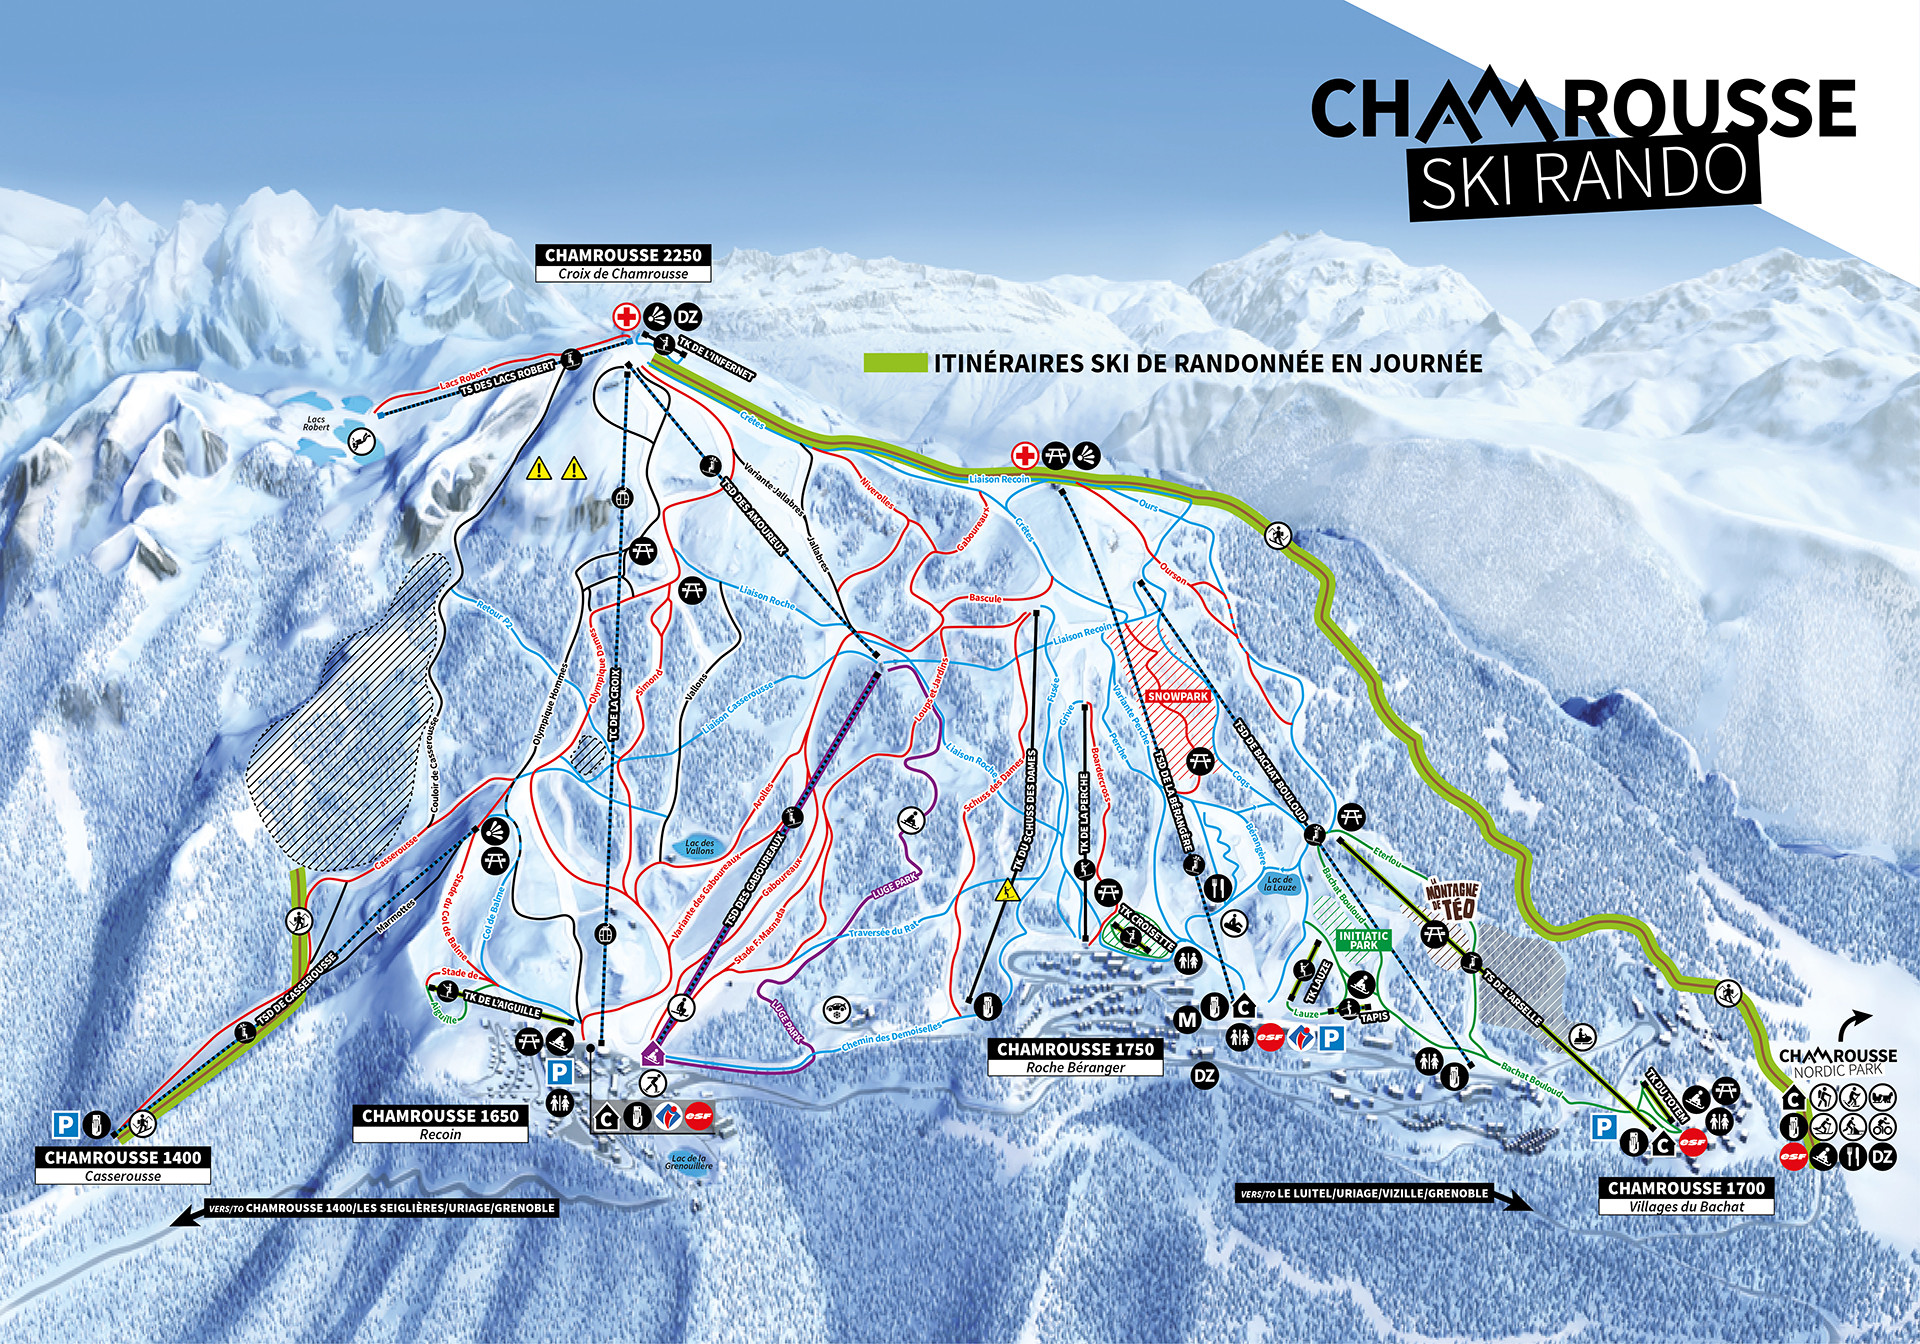 Chamrousse ski touring map 